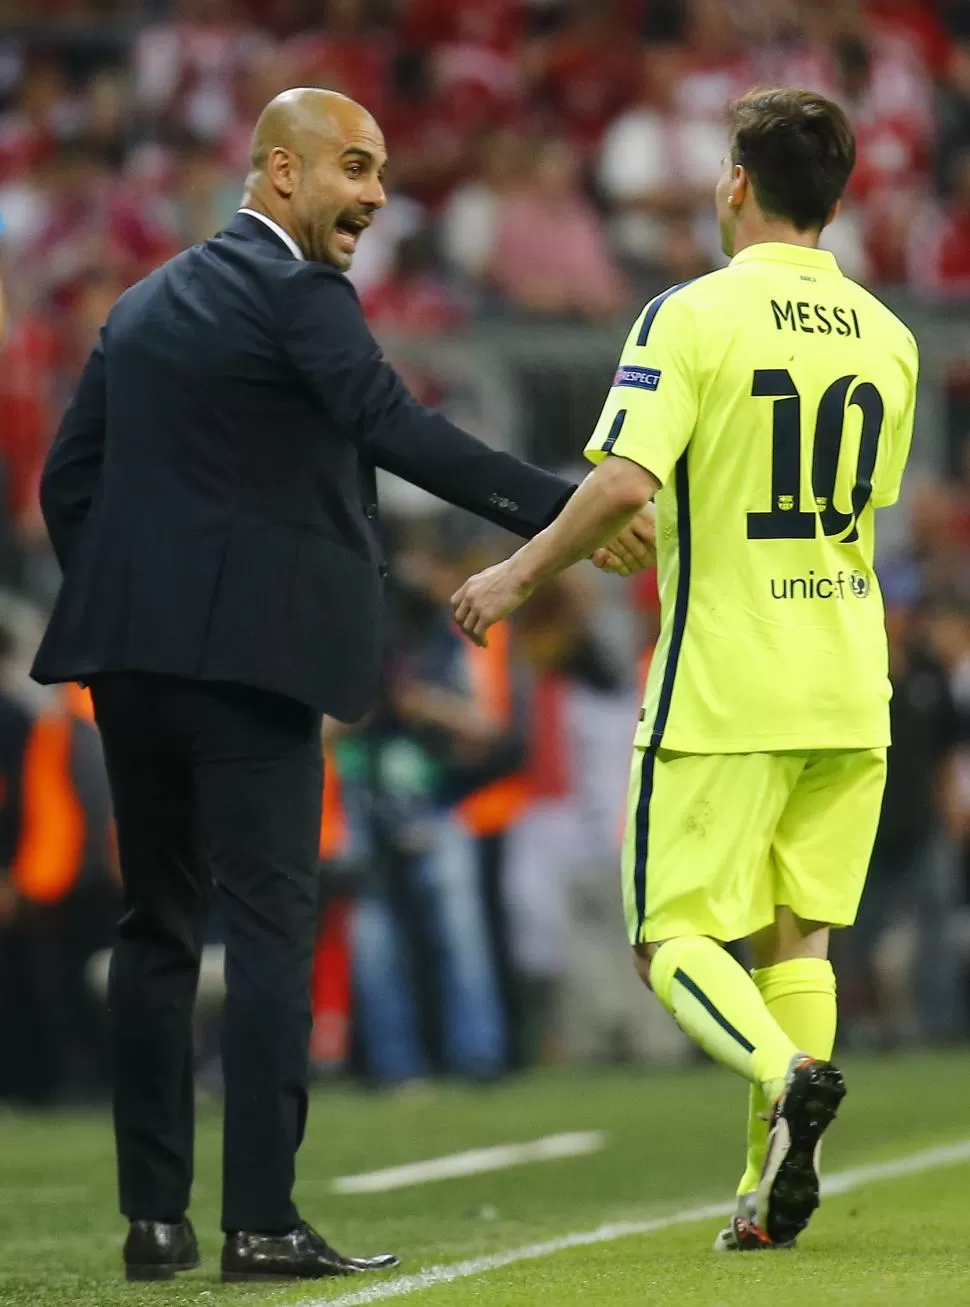 SALUDO. Guardiola saluda a Messi, que le regaló varias alegrías al DT en el fútbol. reuters